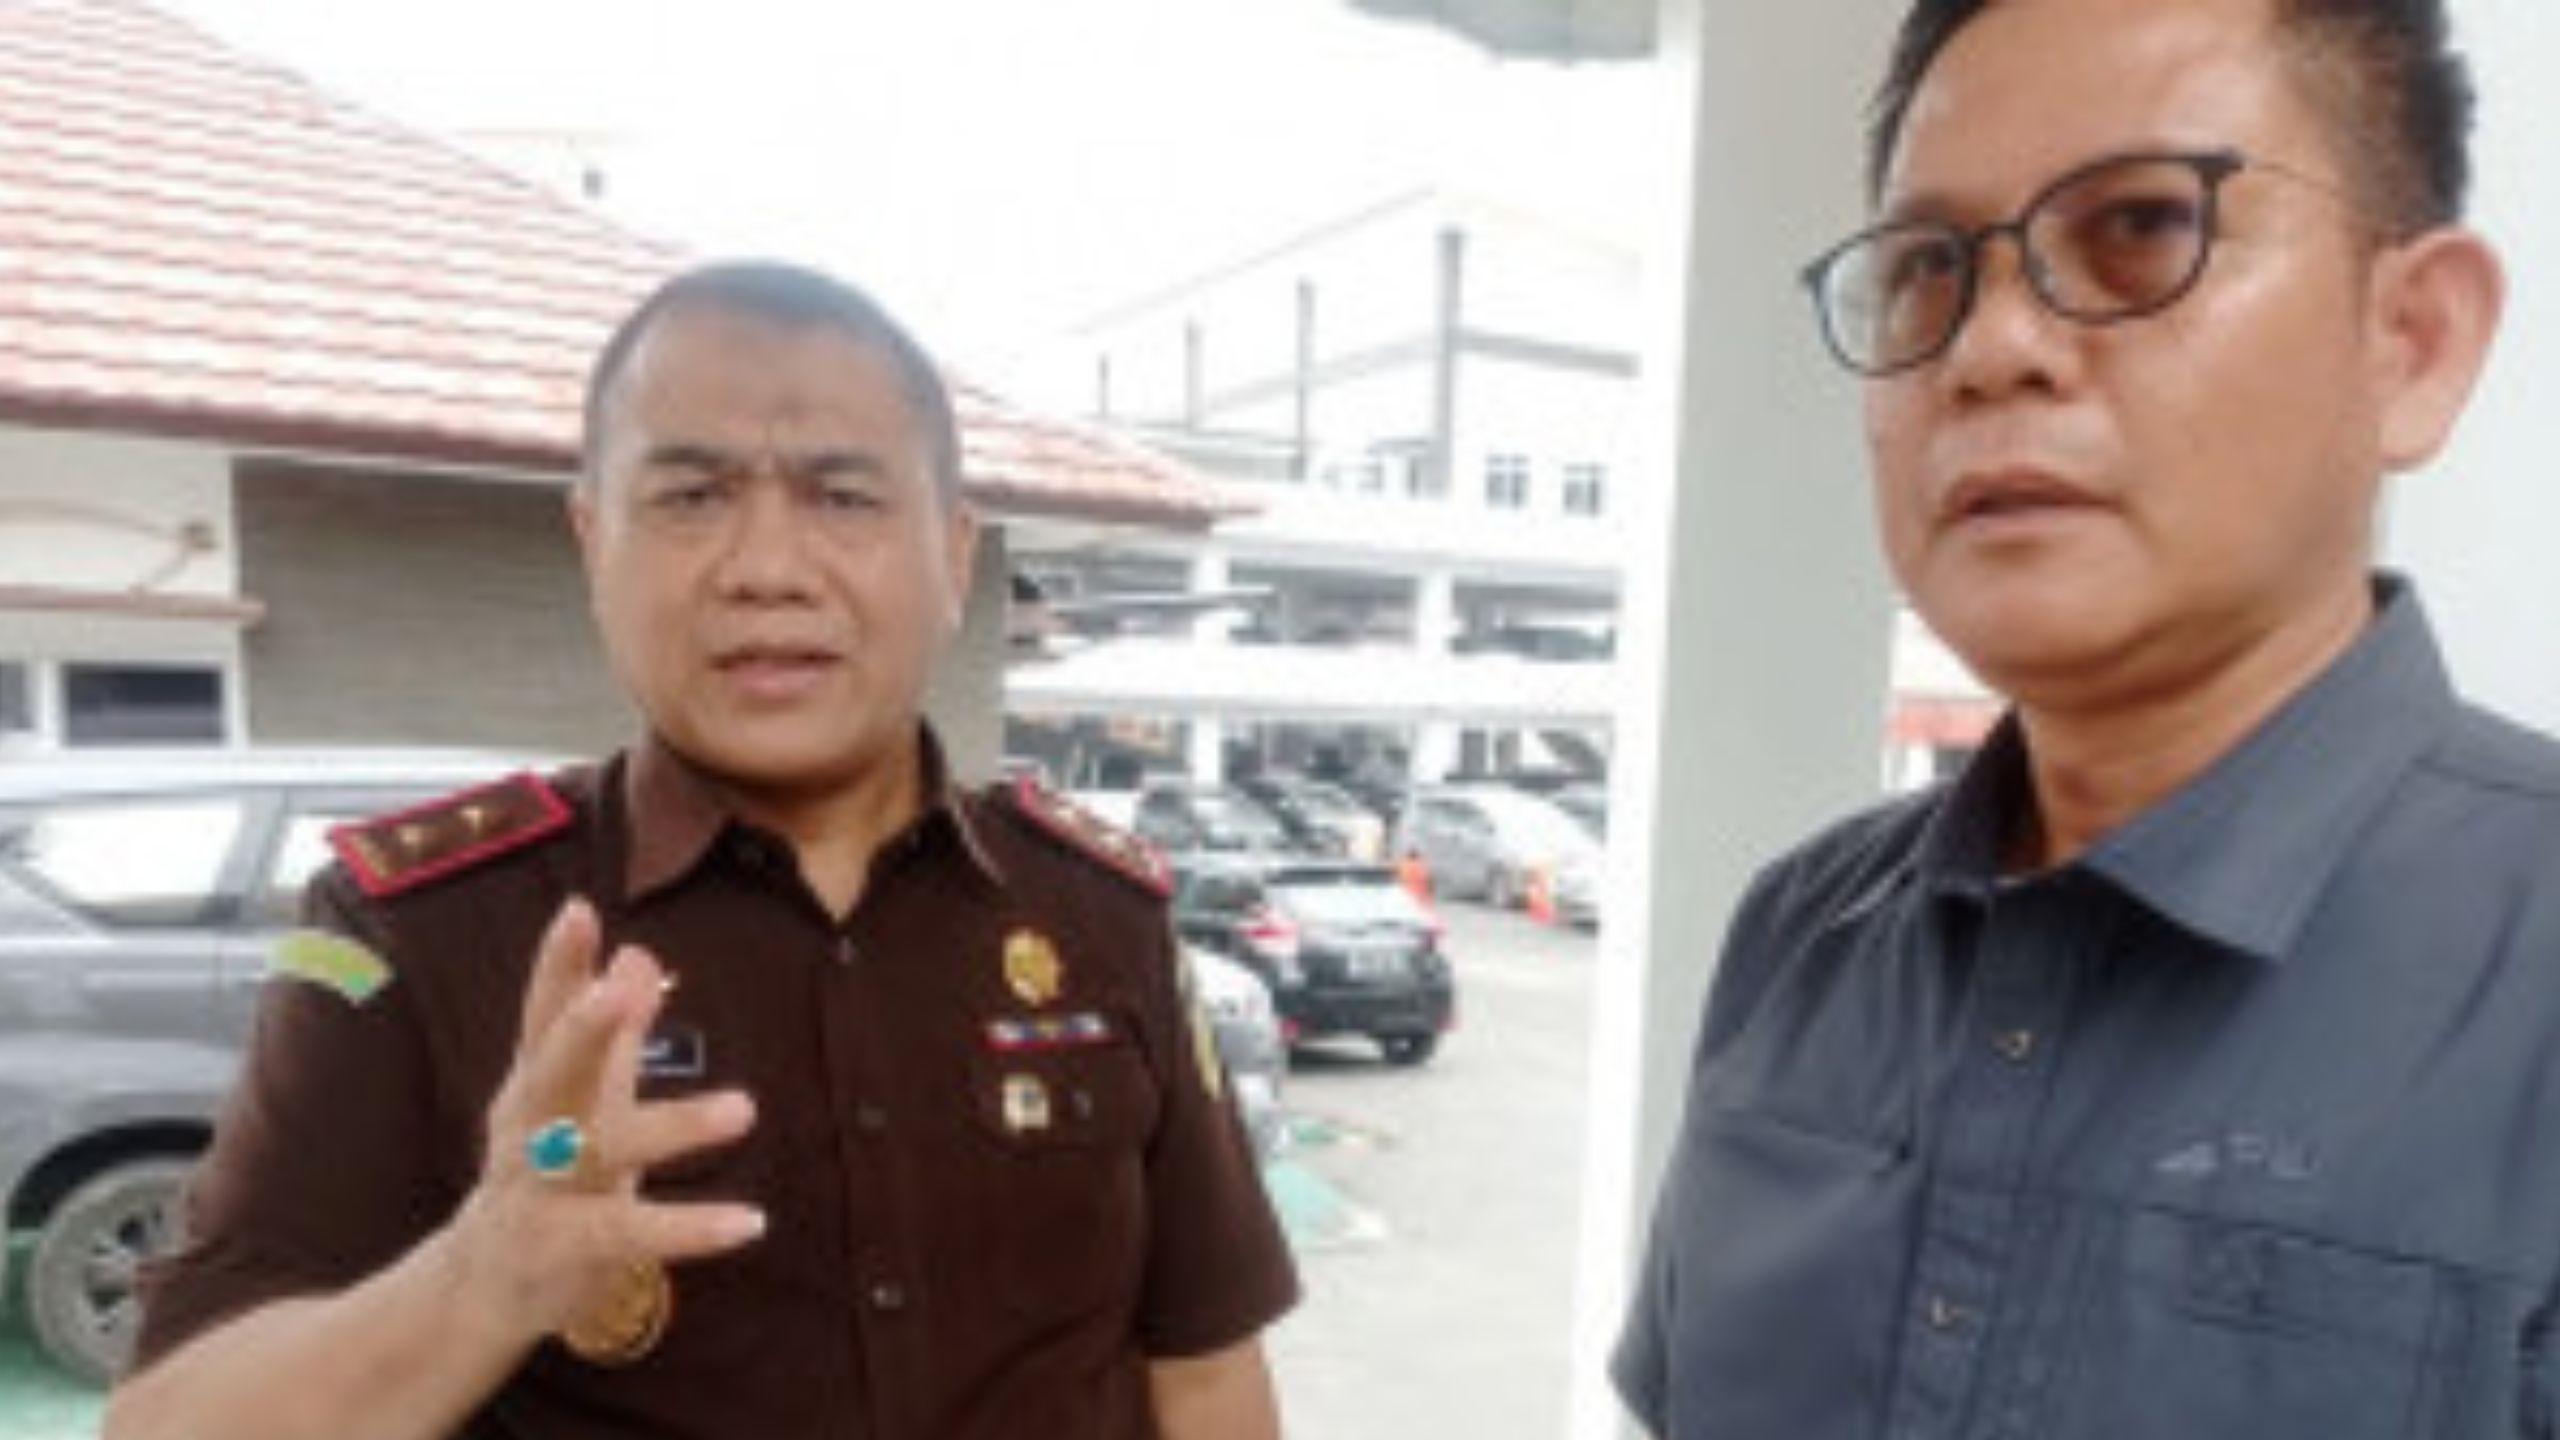 Kajati Lampung Menegaskan Pelaku Joki Tes CPNS Bukan Pegawai Kejaksaan